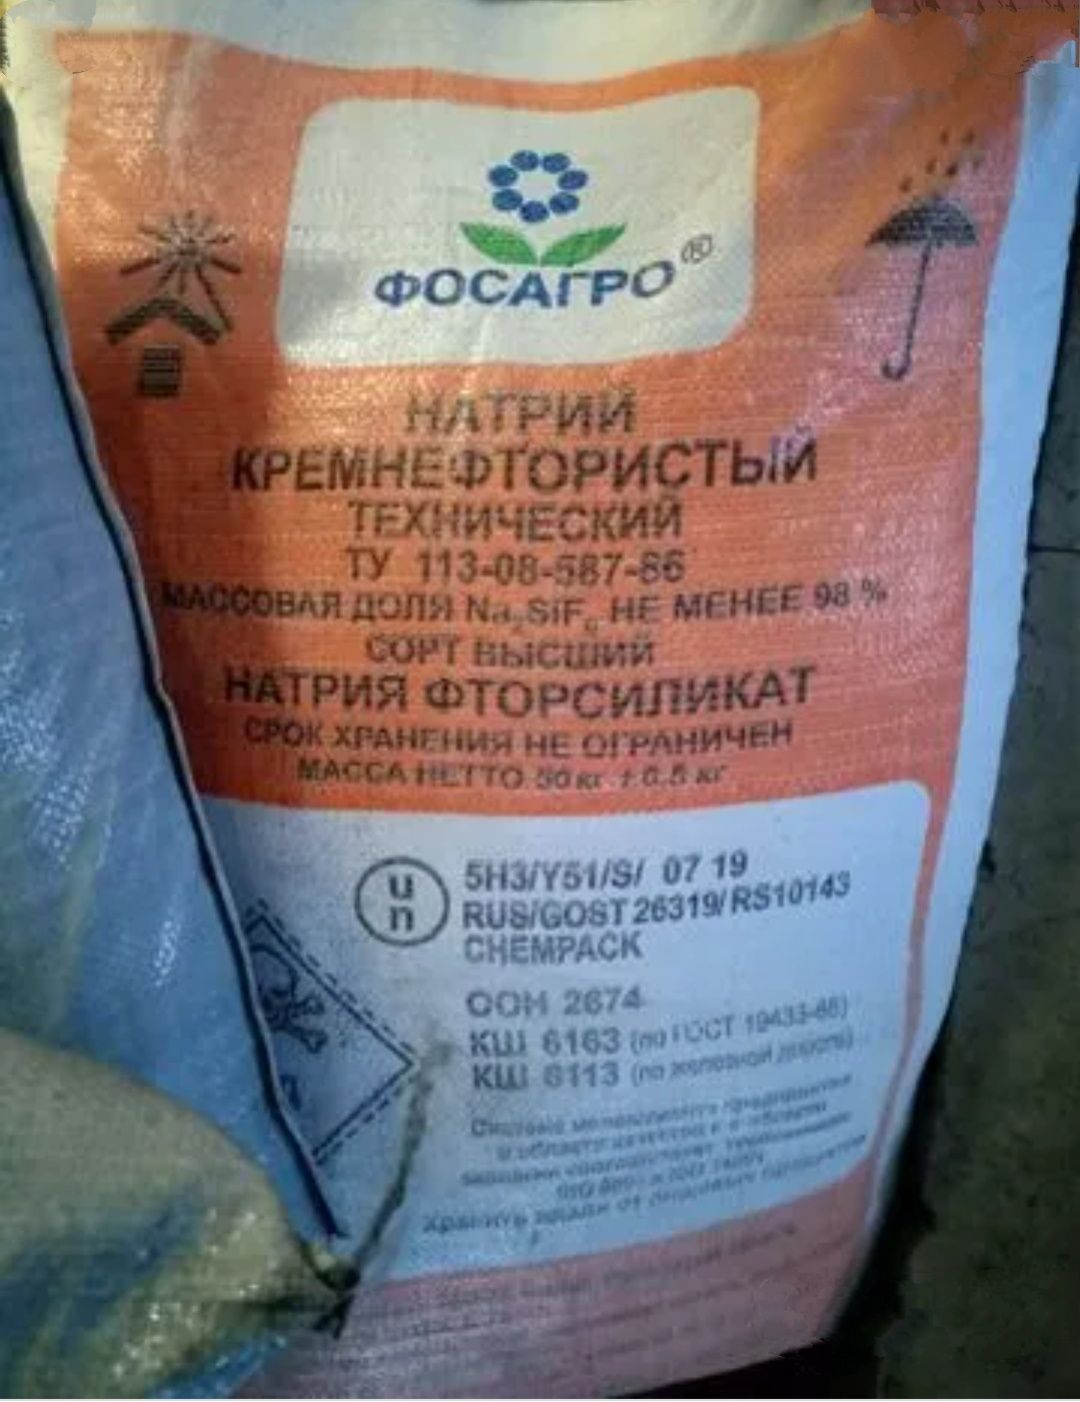 Натрий кремнефтористый (фторсиликат натрия)производство Россия